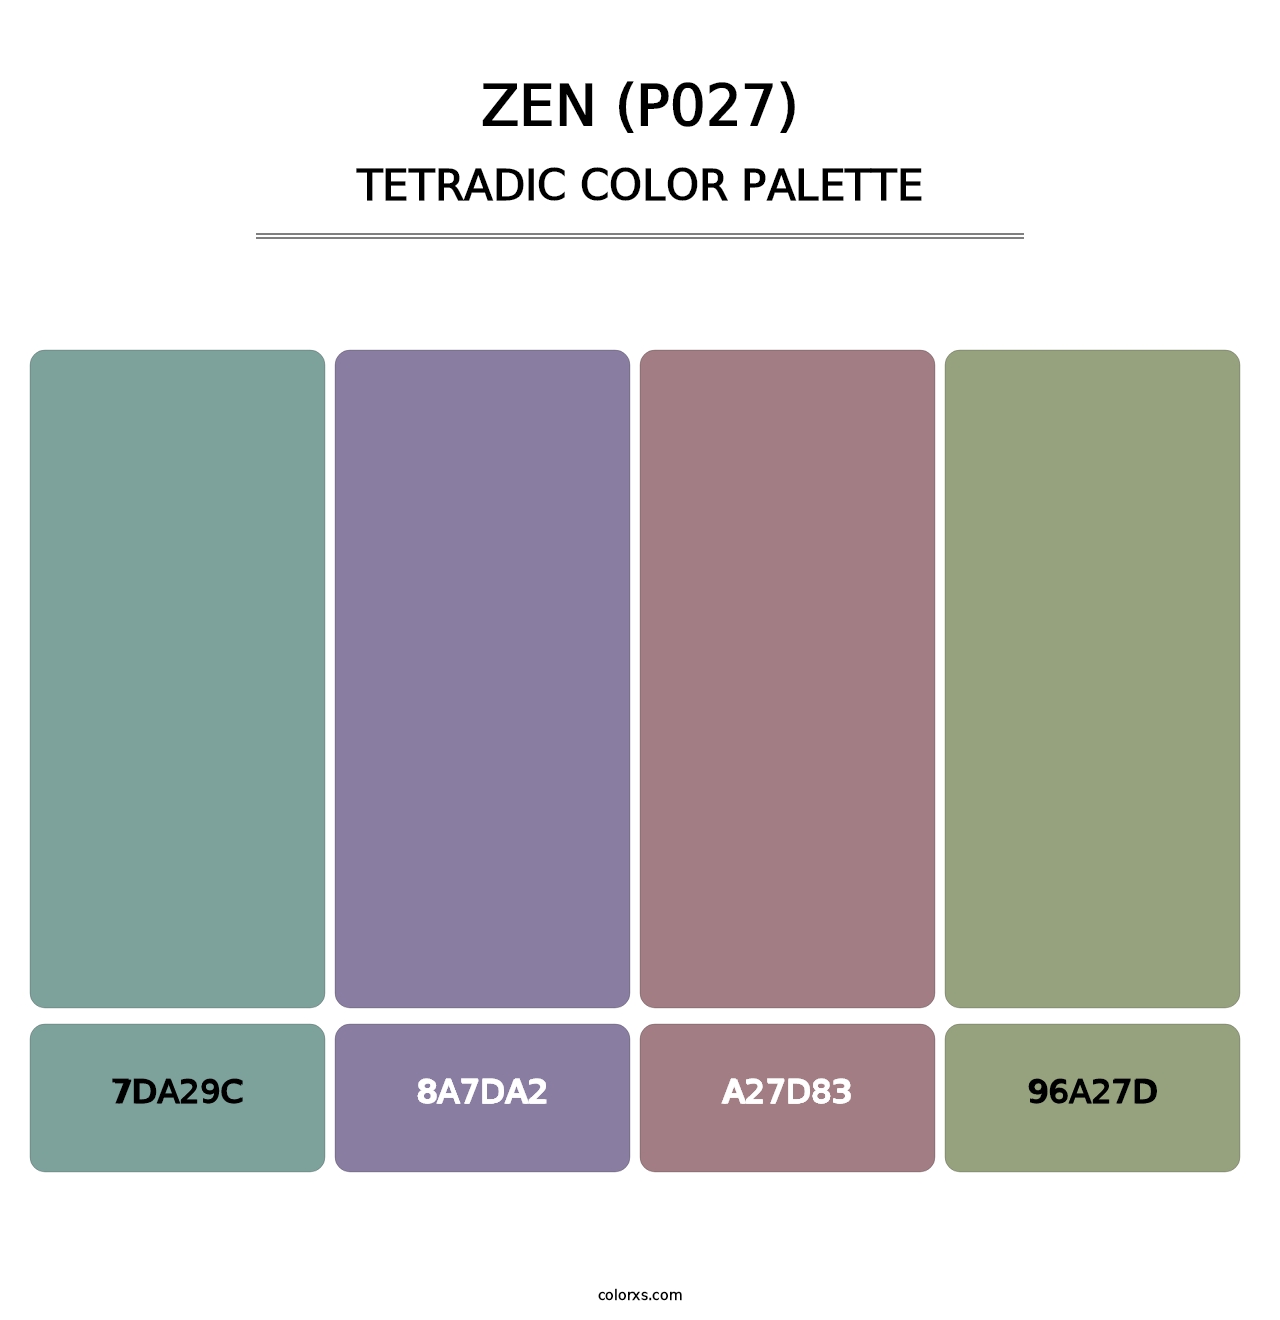 Zen (P027) - Tetradic Color Palette